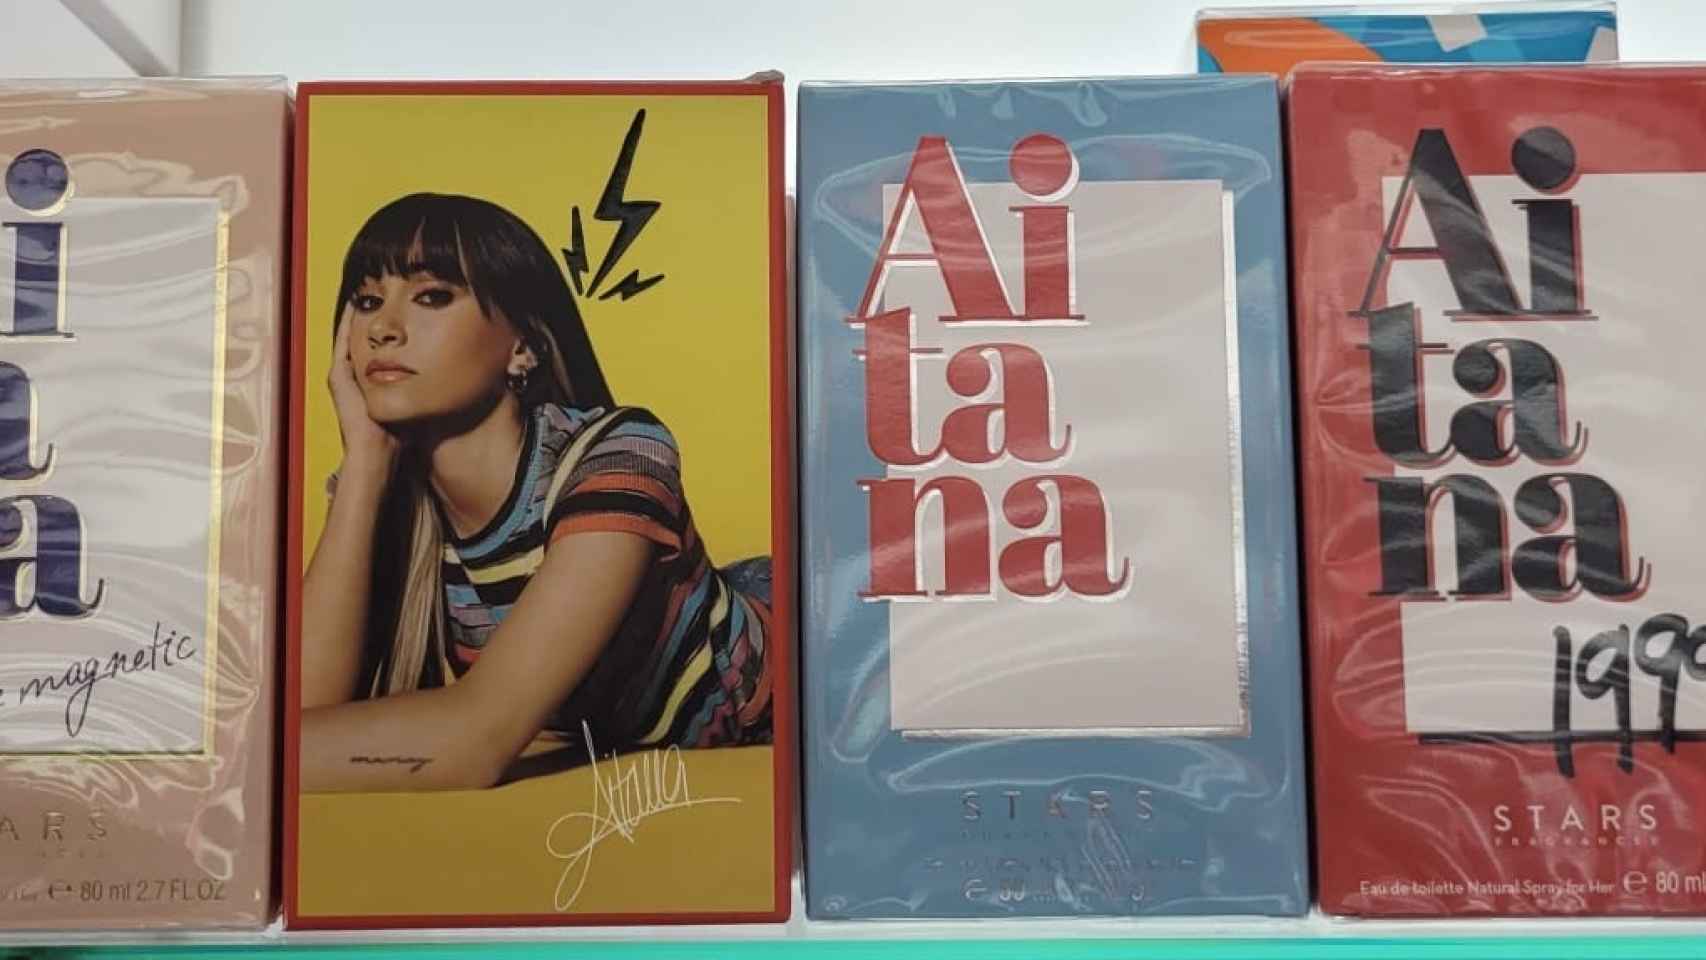 La gama de perfumes de la cantante Aitana, en un establecimiento.